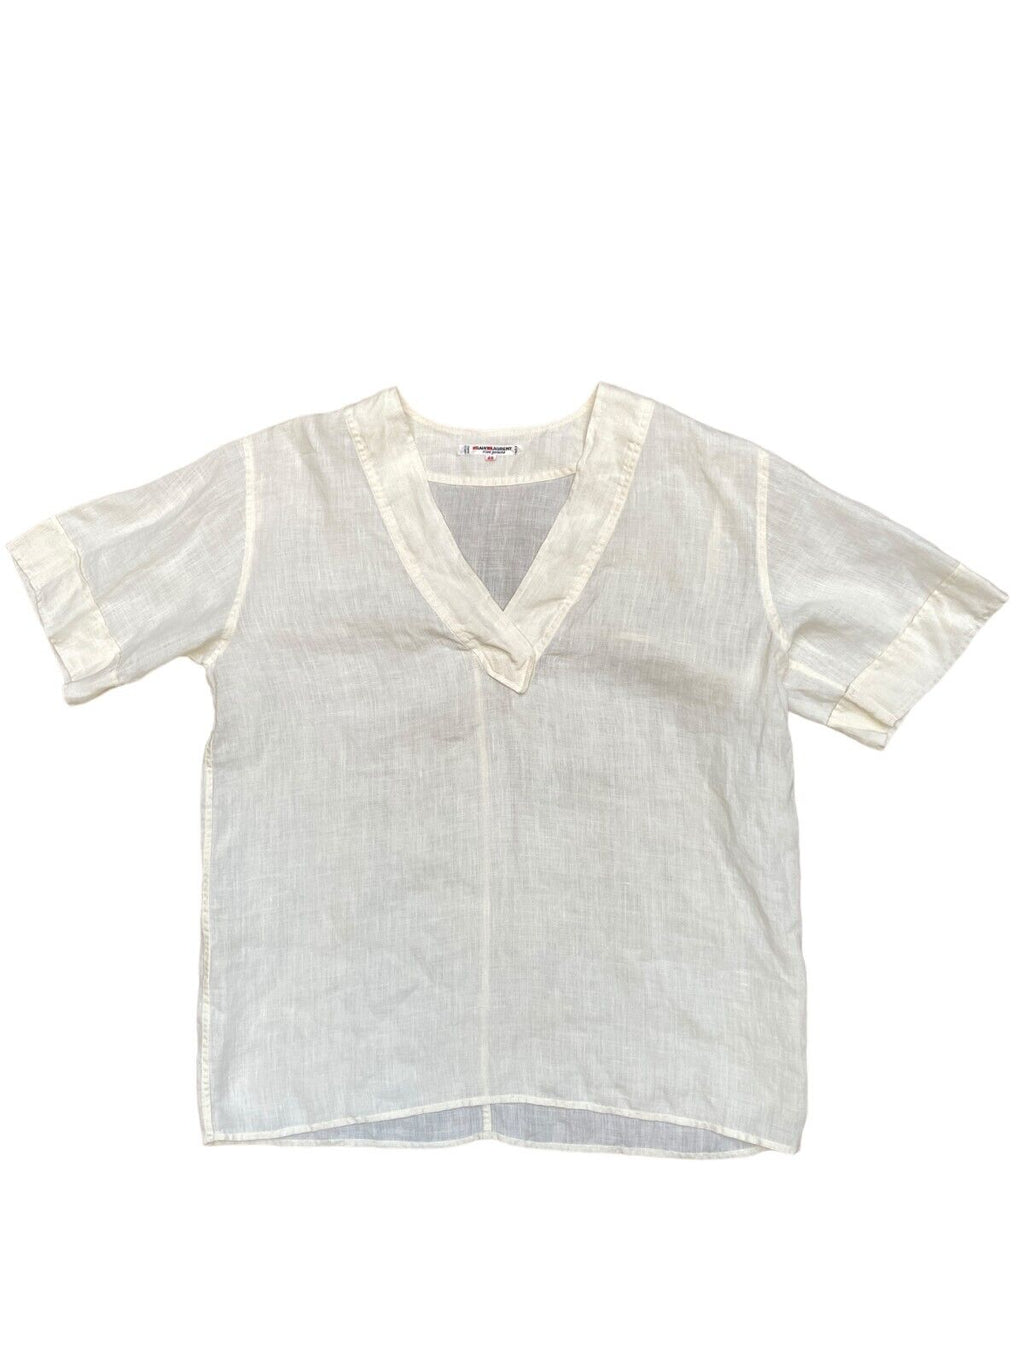 1970s Vintage Linen T-shirt Ivory Color  Size M